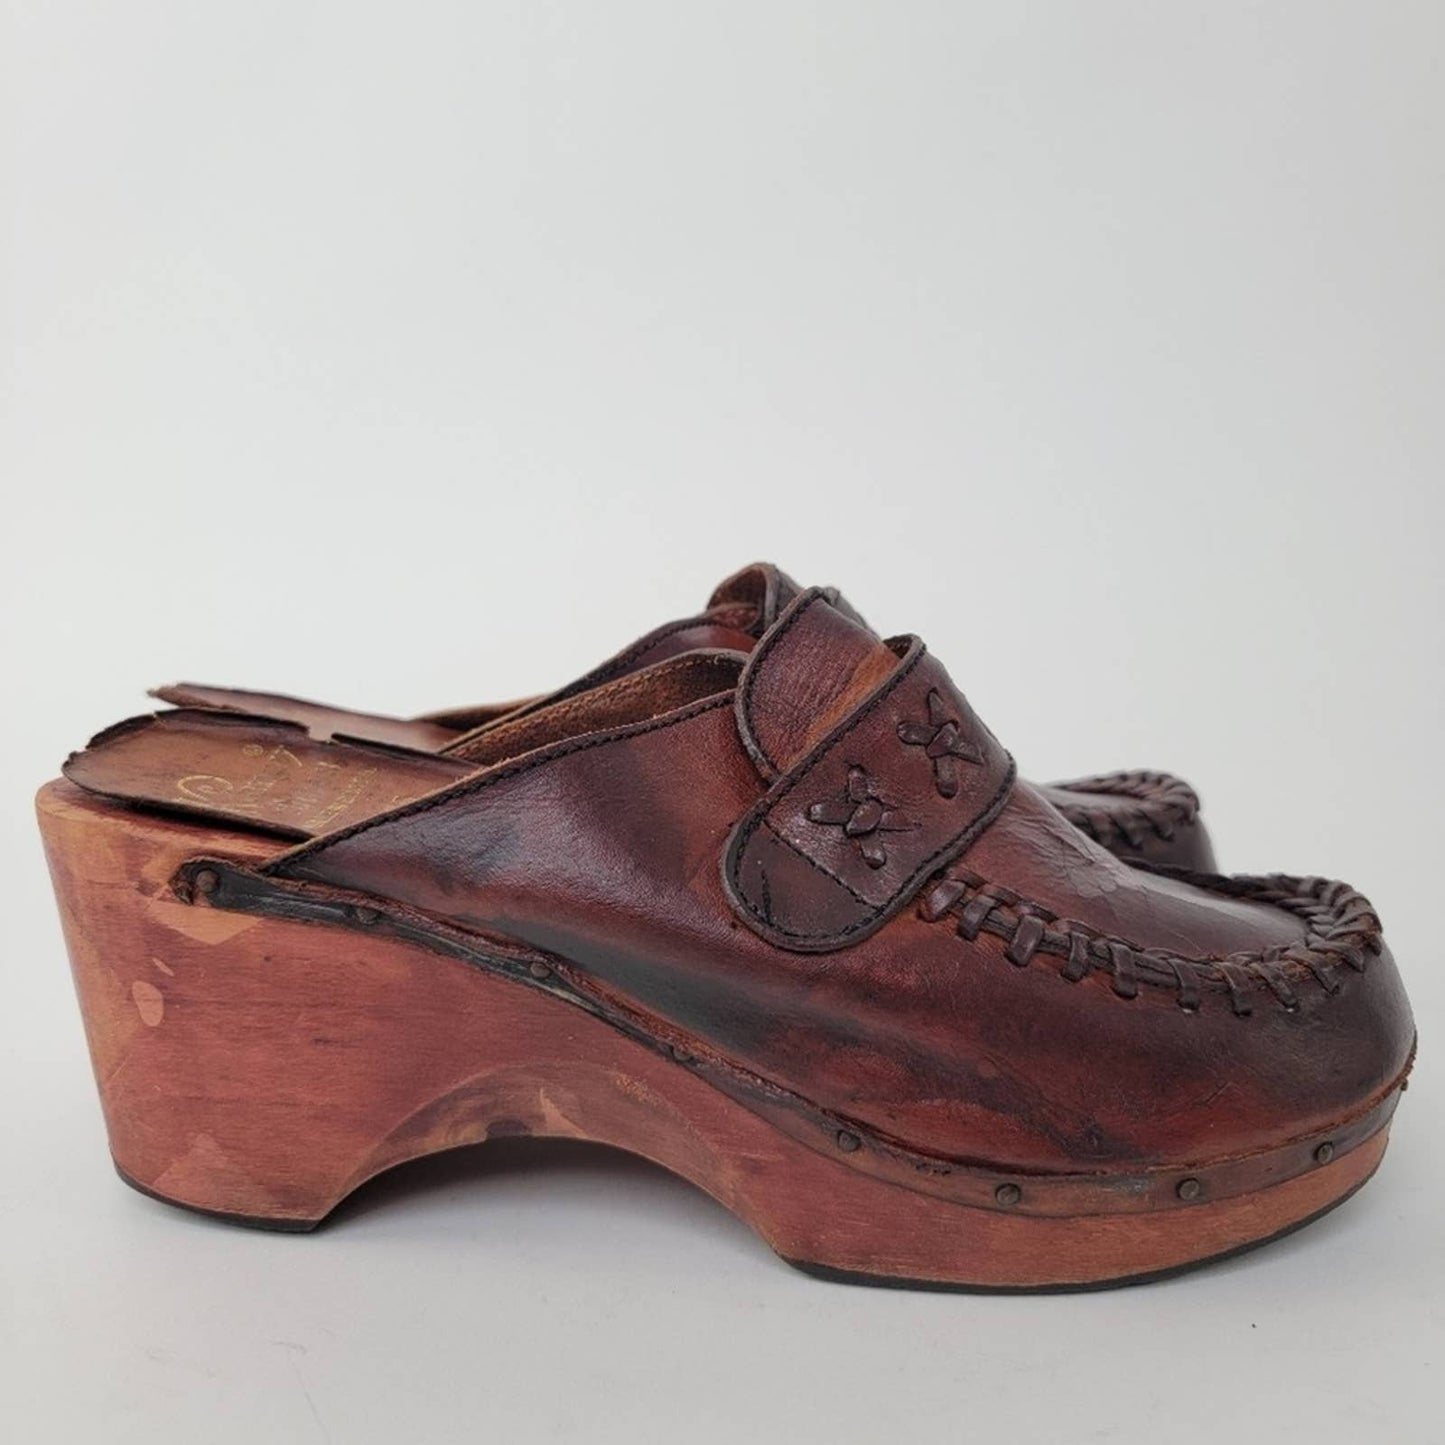 Vintage 70s Wooden Platform Clog Sandals - 6